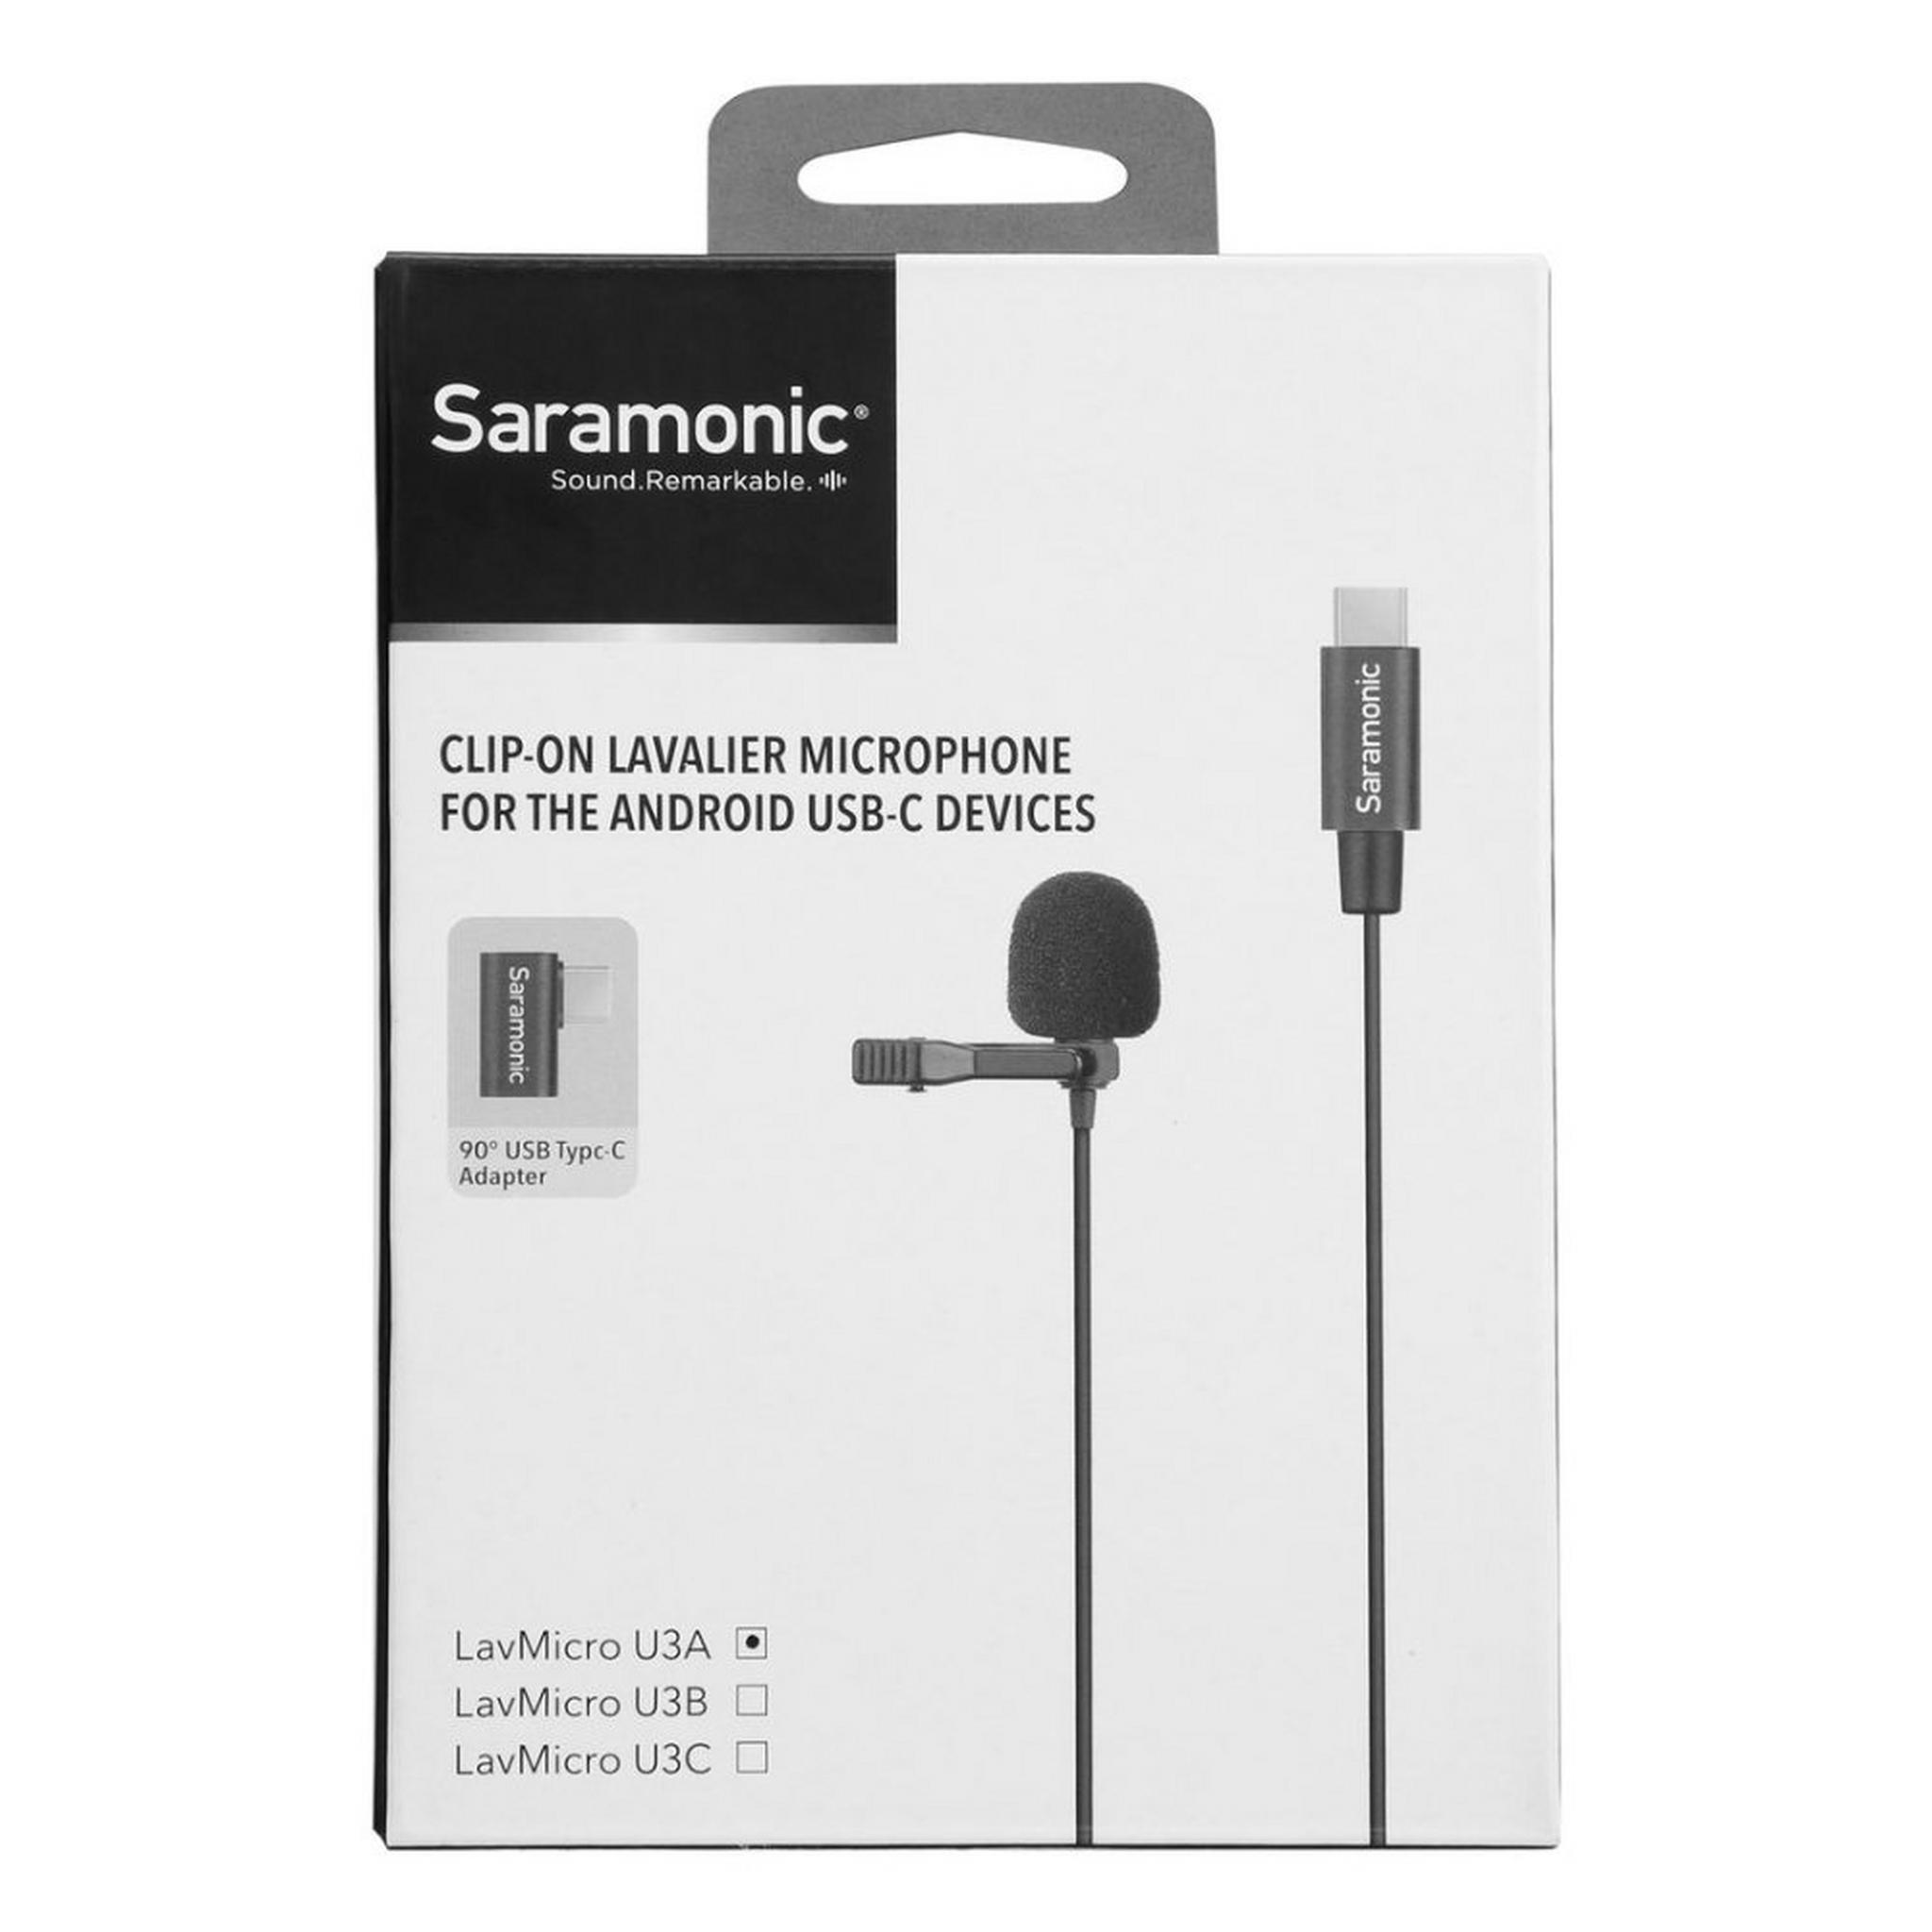 ميكروفون USB-C لافميكرو U3A من سارامونيك